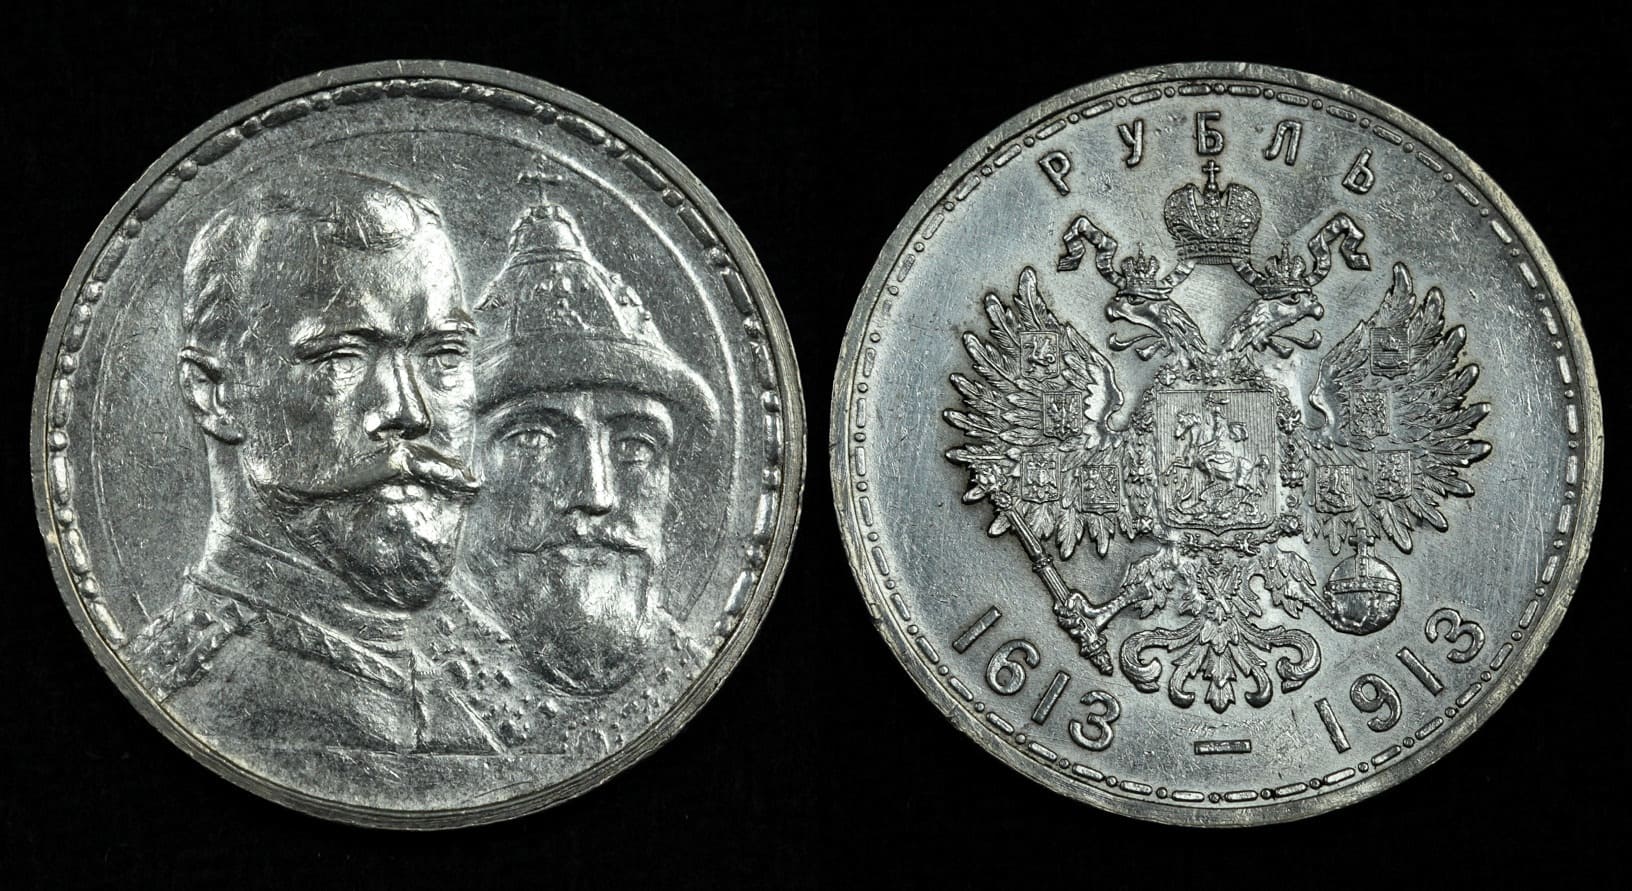 1 Рубль 1913 года «300-е Романовых». 300 Лет династии Романовых фото.